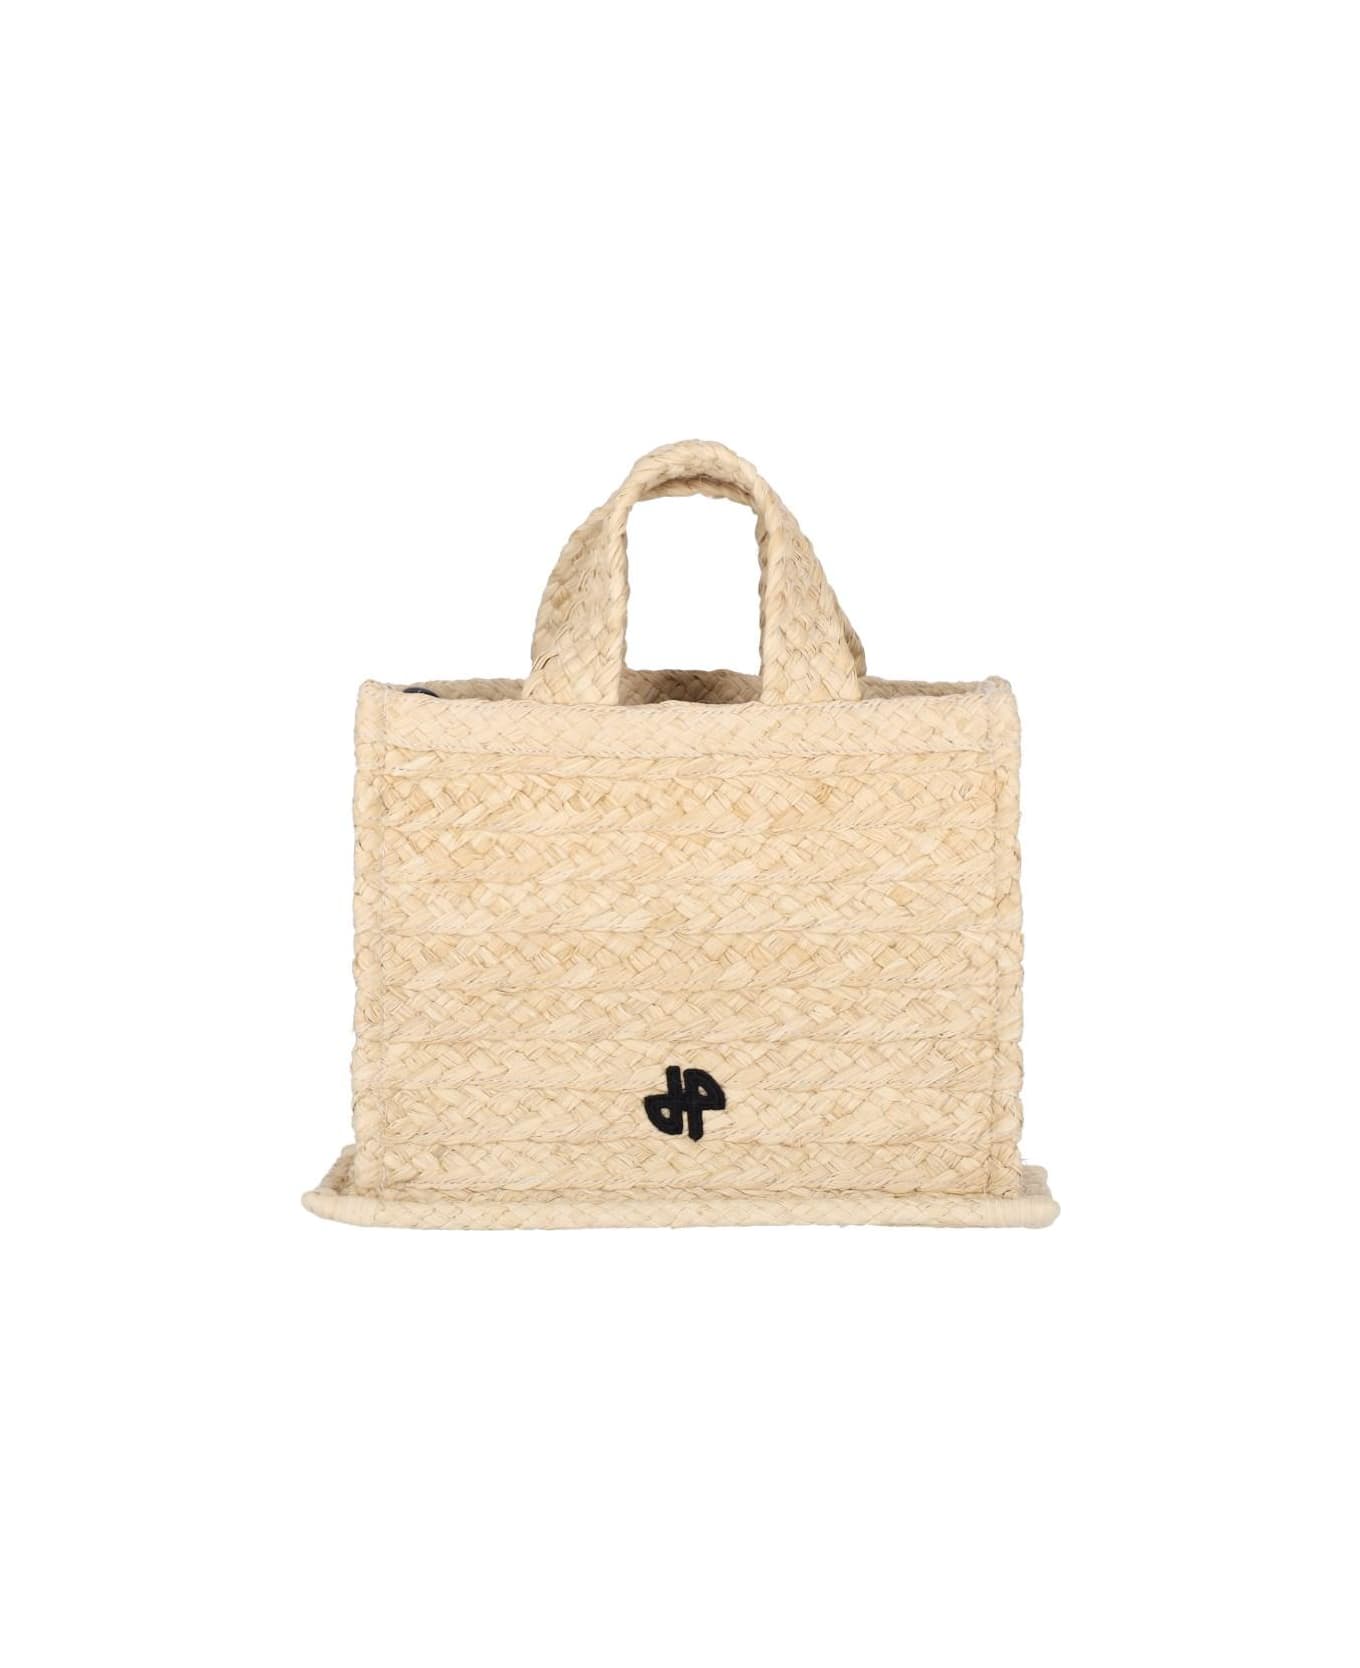 Patou Small Handbag 'jp' - White